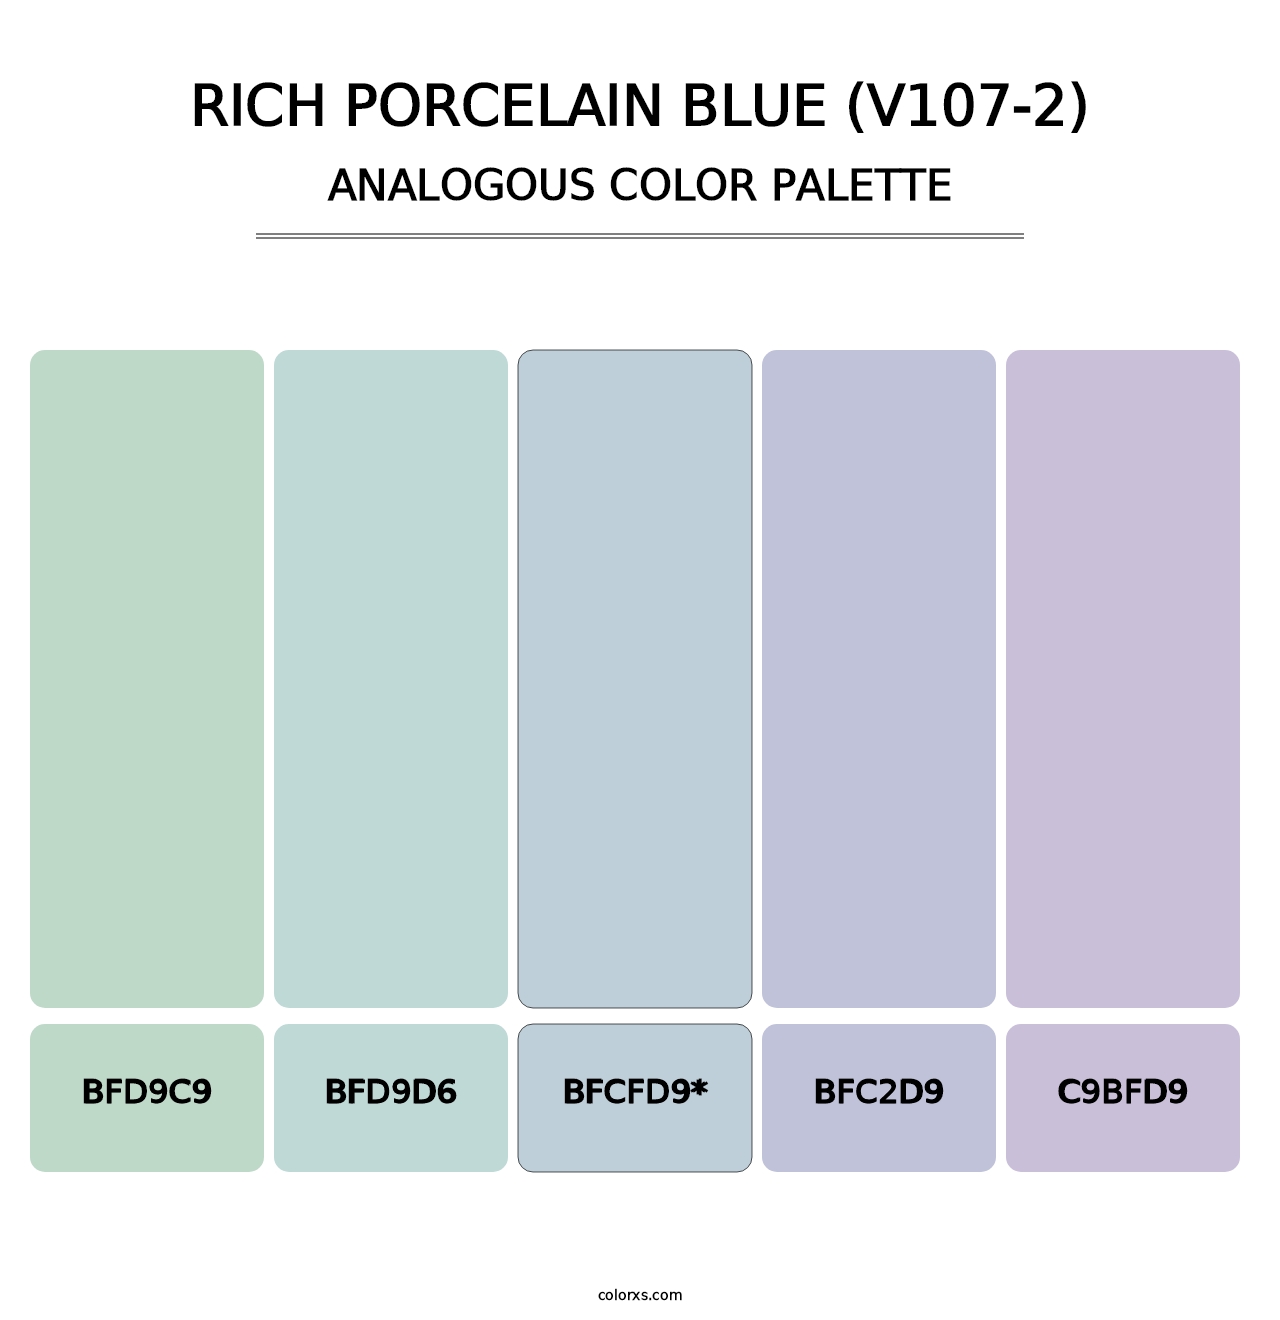 Rich Porcelain Blue (V107-2) - Analogous Color Palette